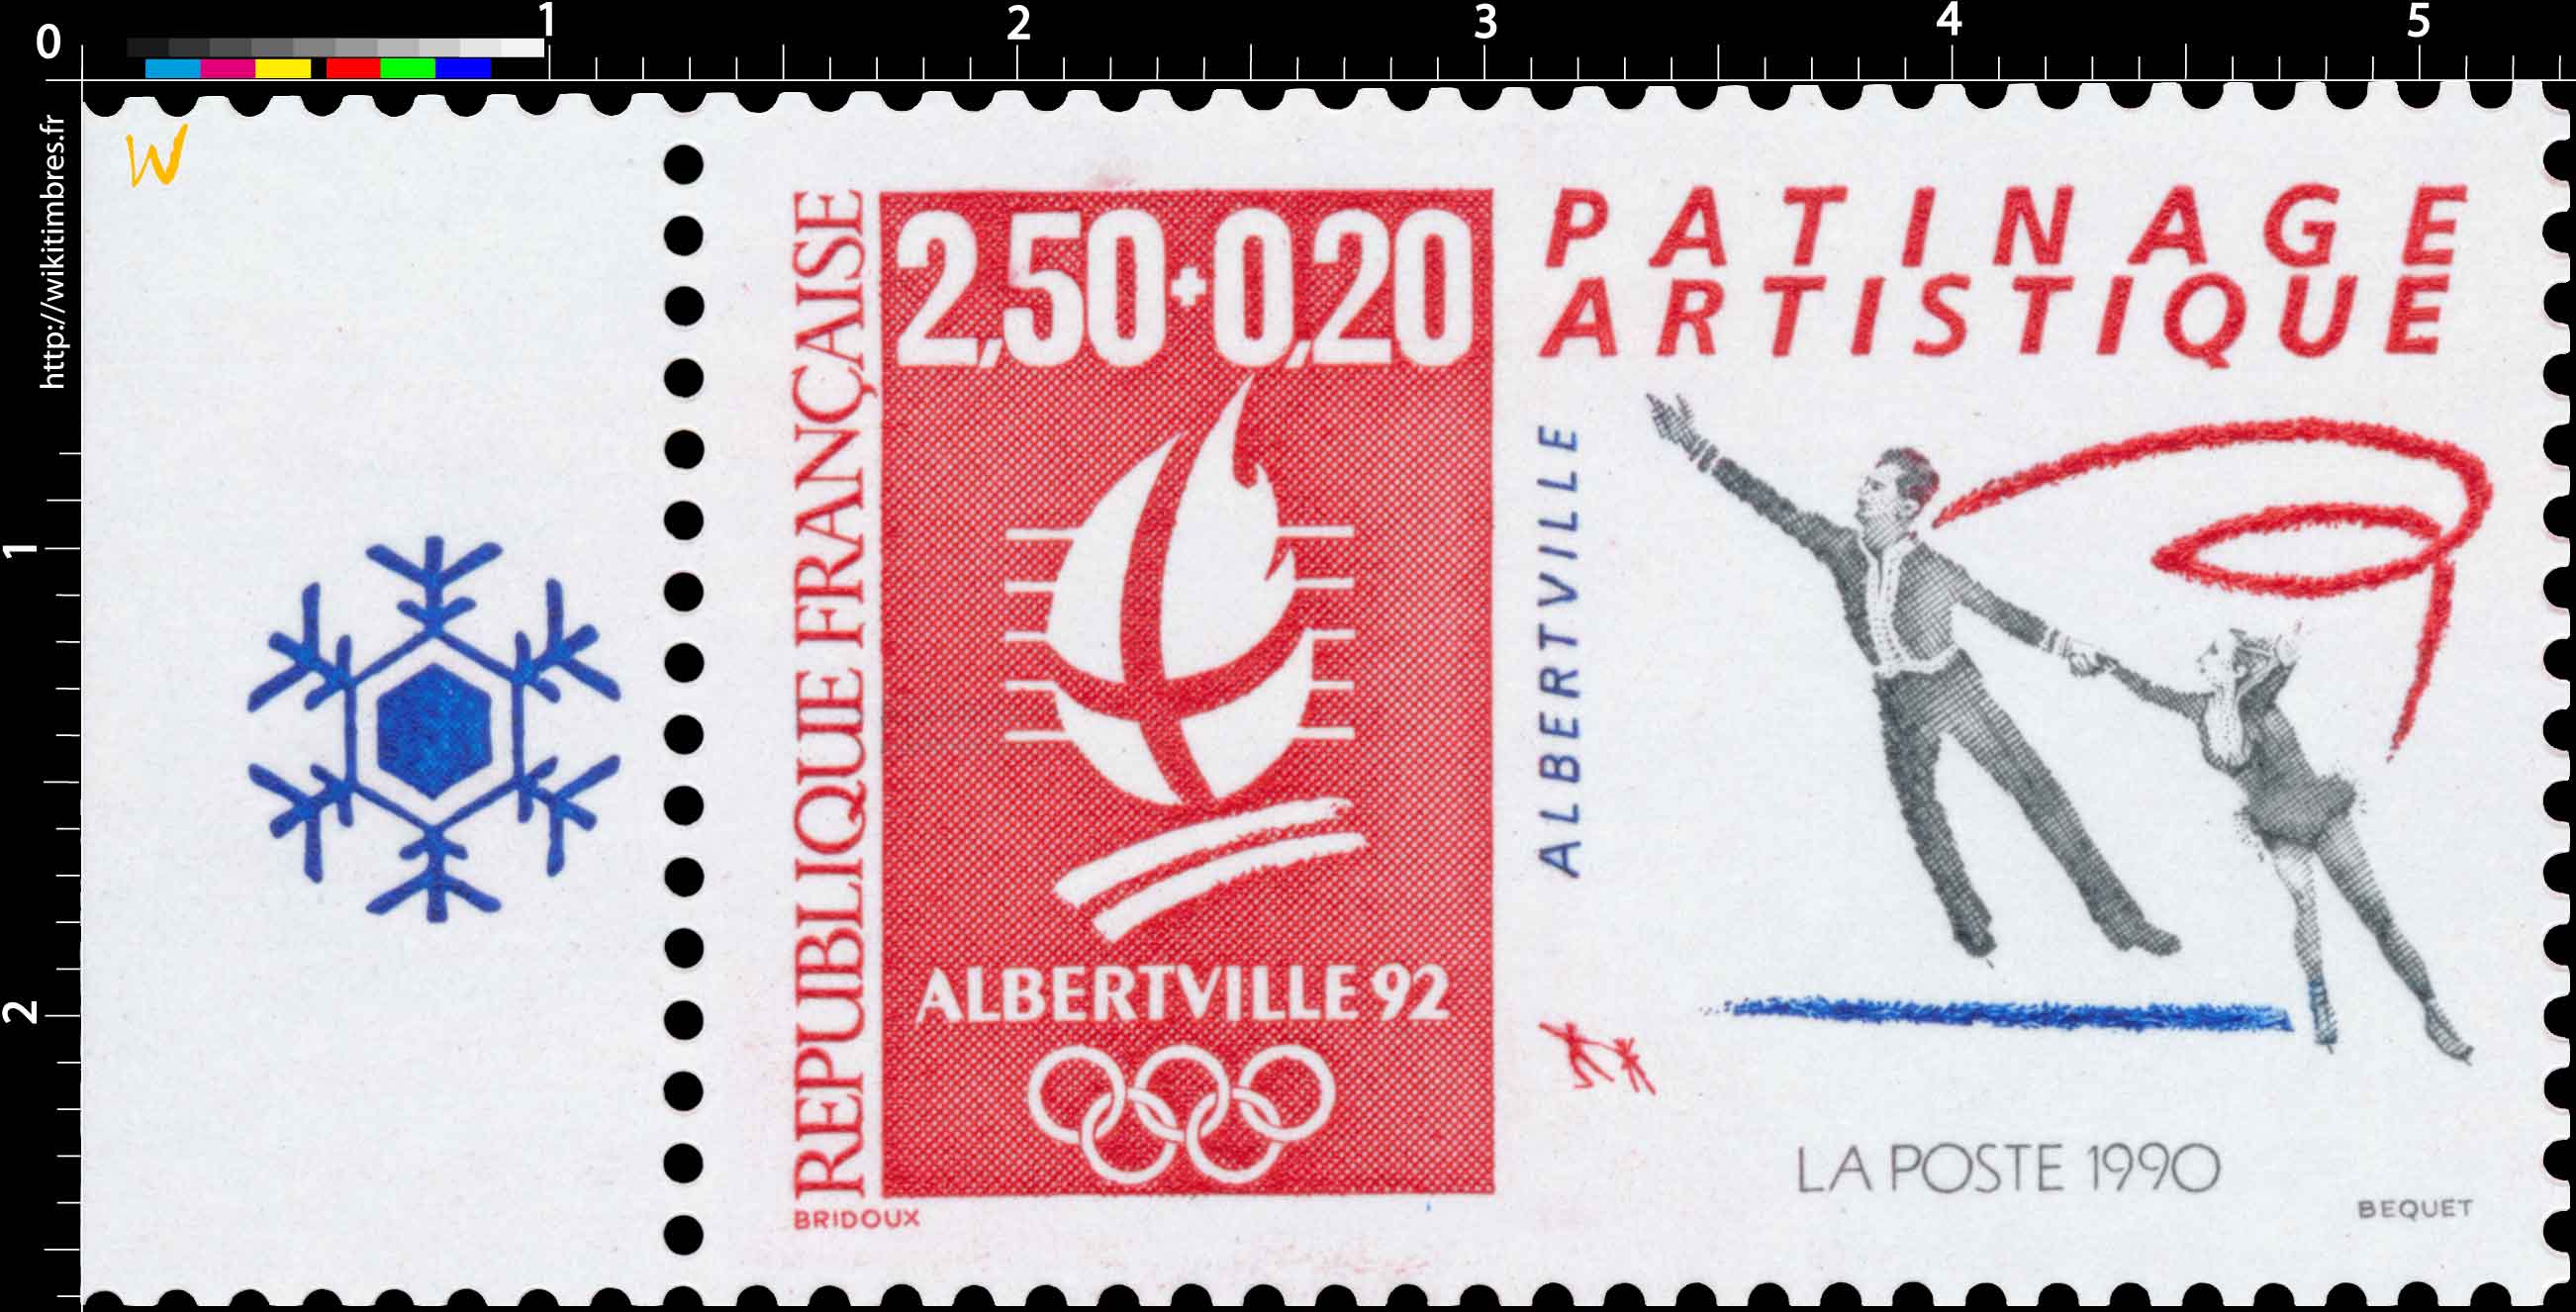 1990 ALBERTVILLE 92 PATINAGE ARTISTIQUE ALBERTVILLE